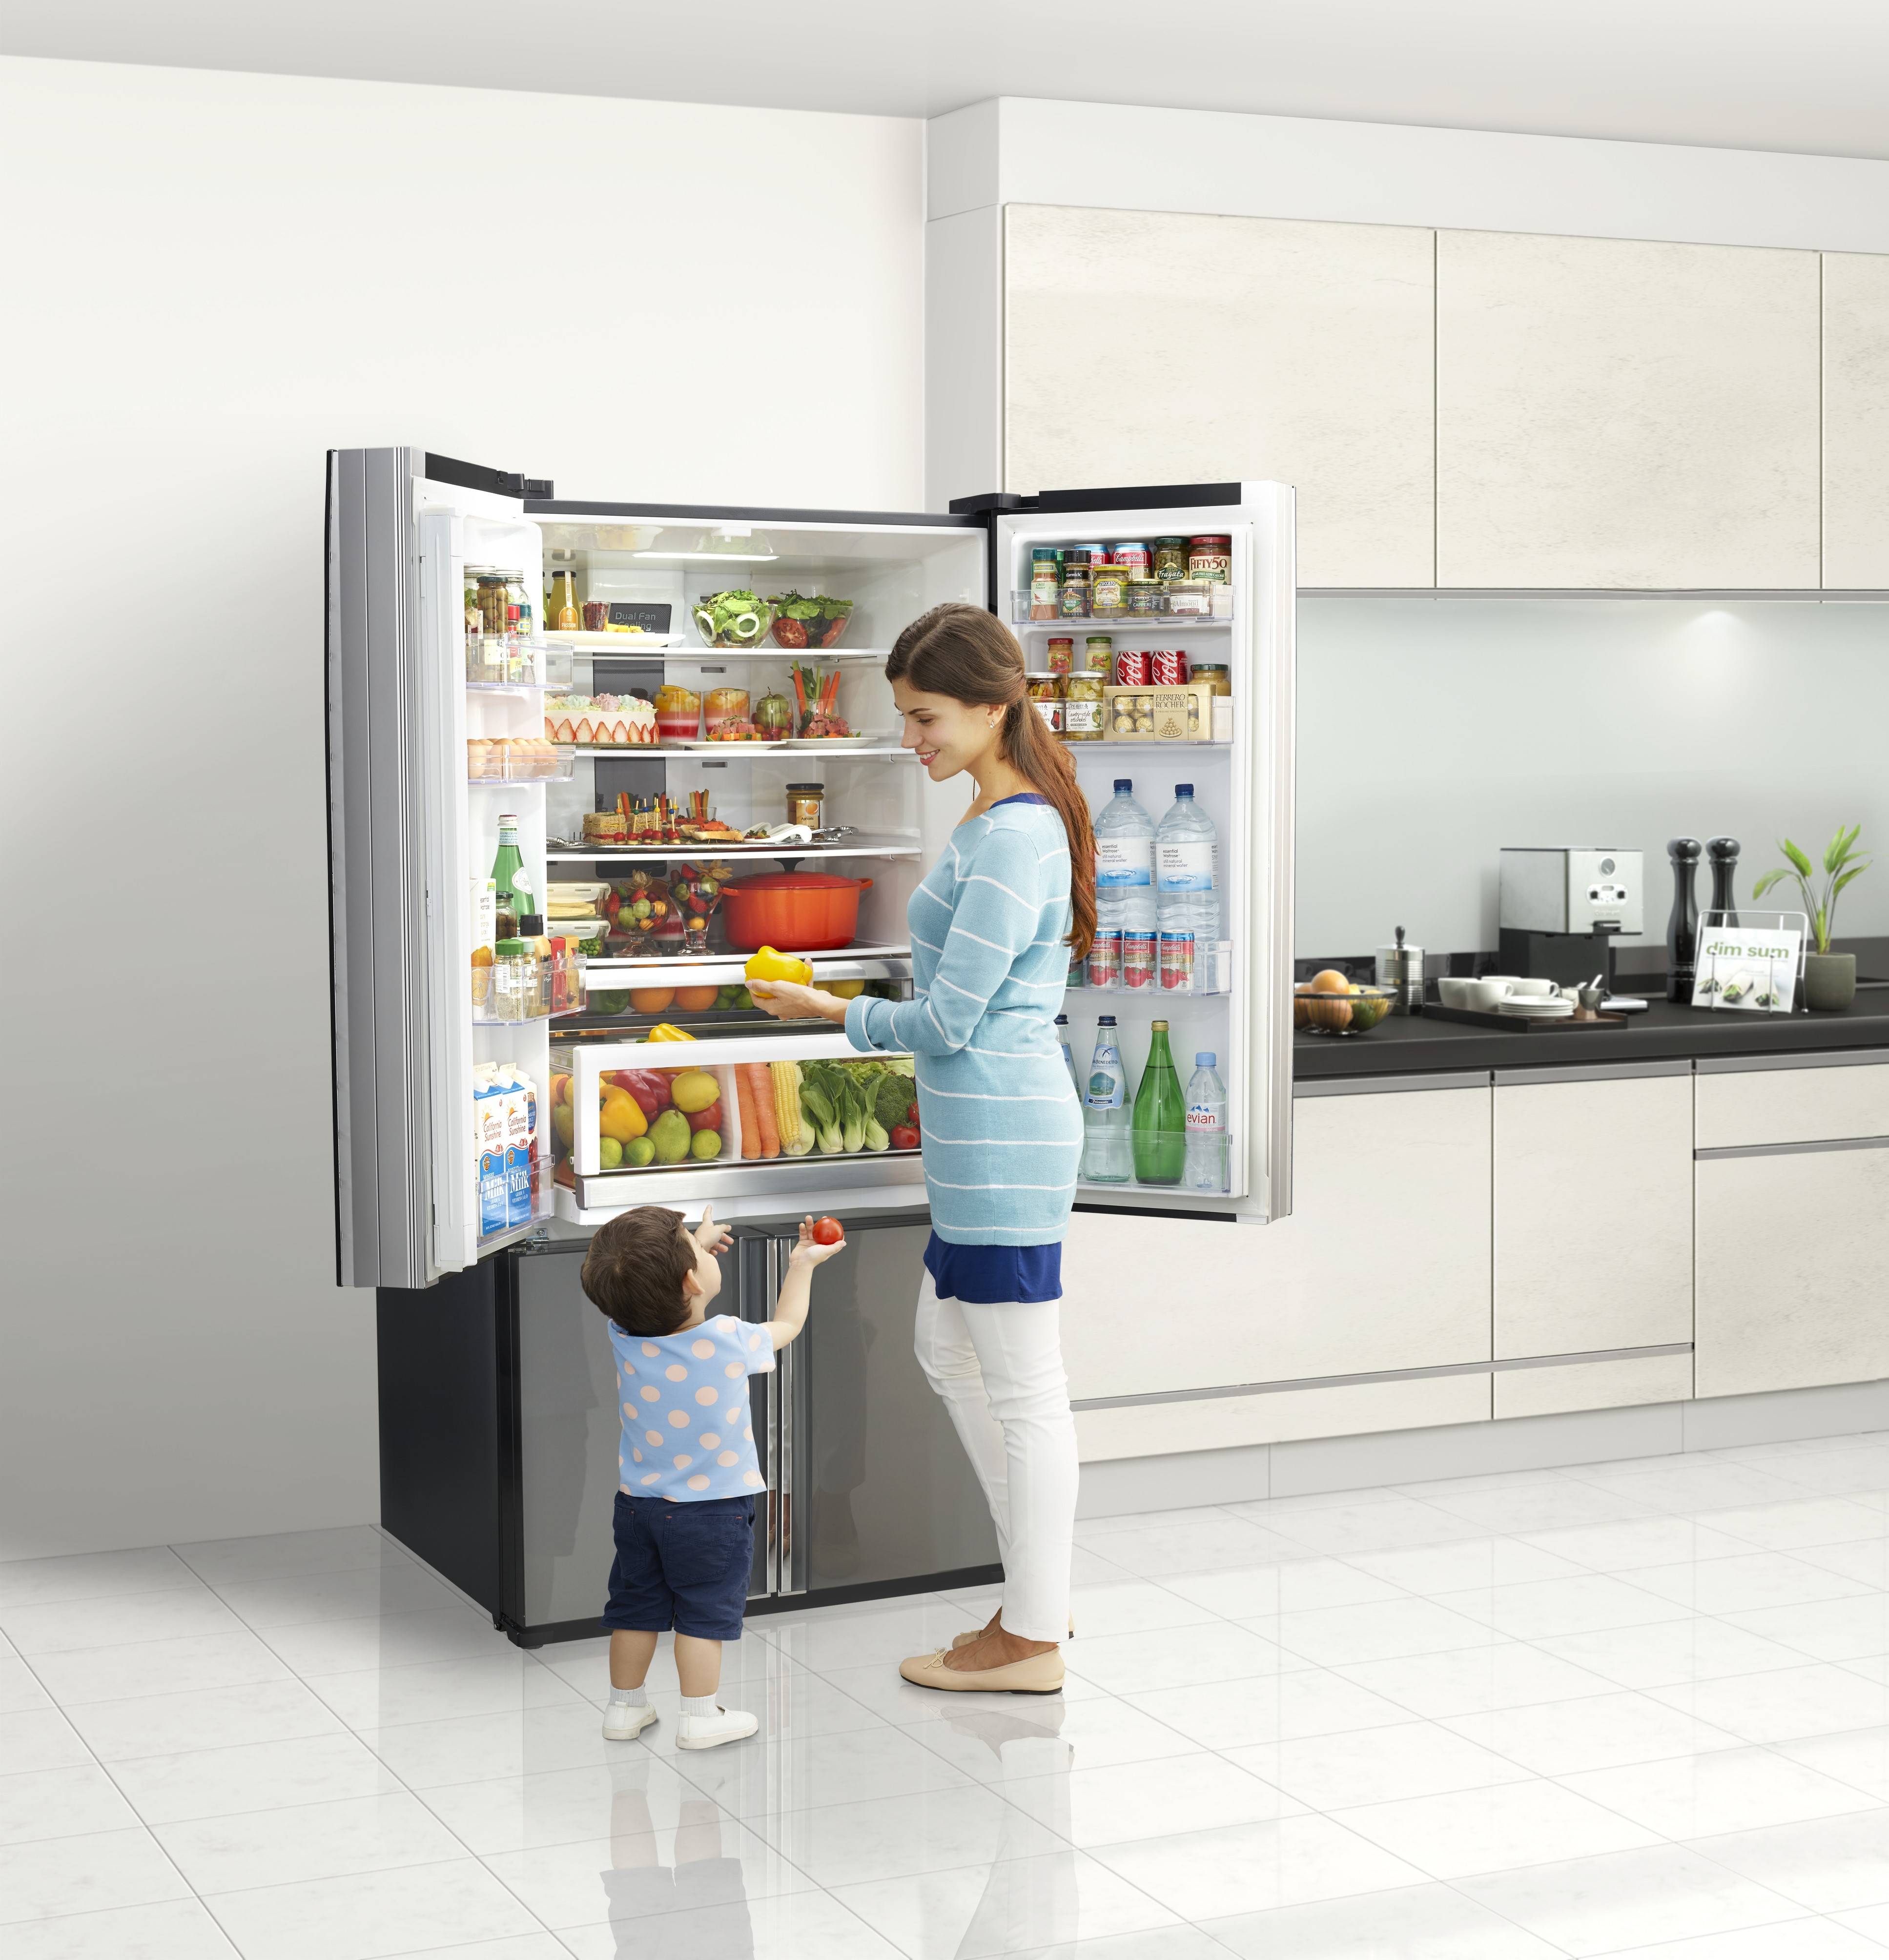 Thiết kế tủ lạnh Hitachi có kiểu dáng thân thiện và hiện đại